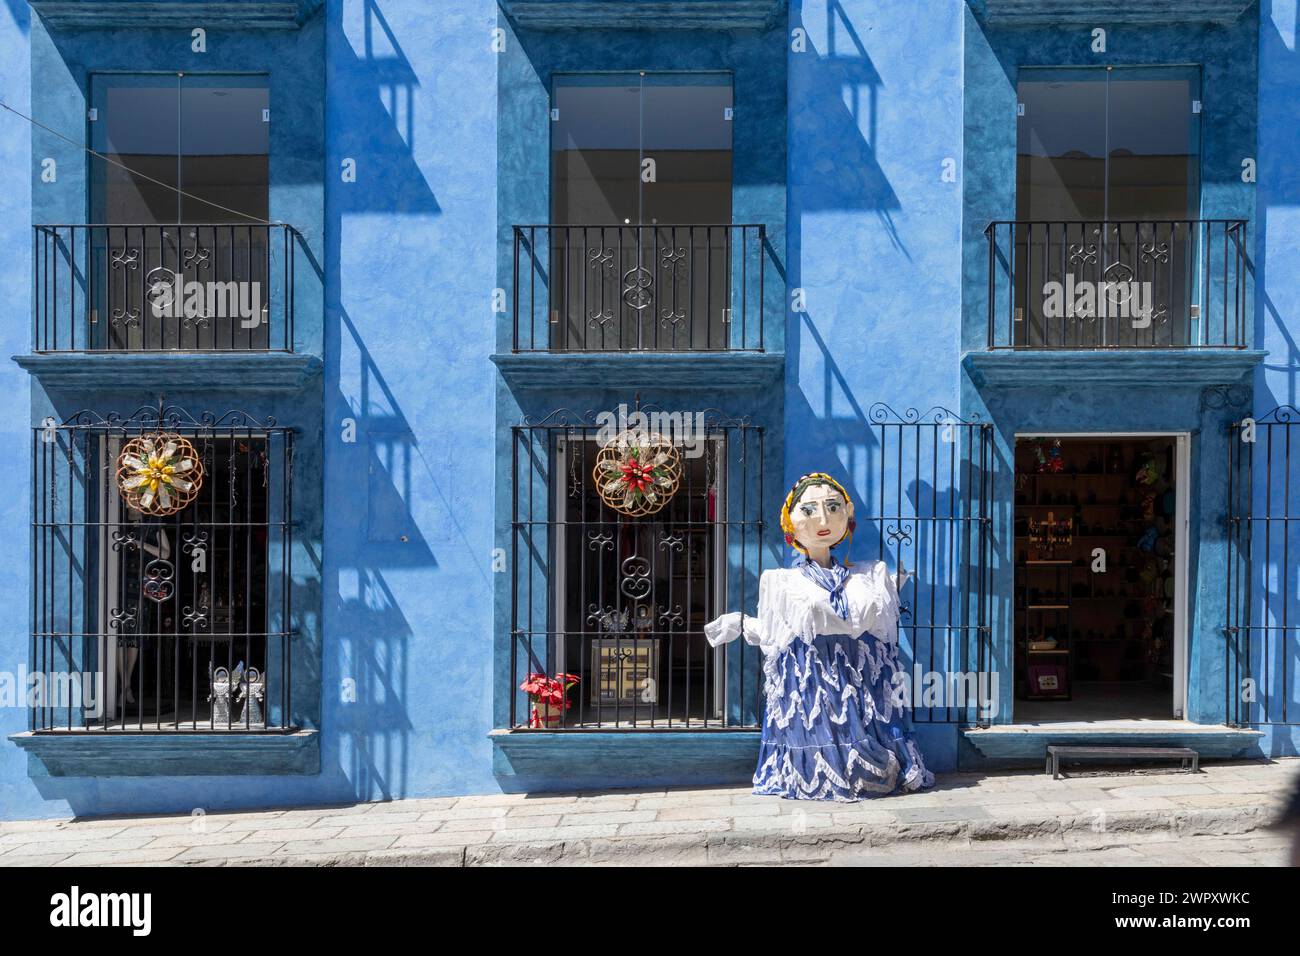 Oaxaca, Mexique - Une marionnette géante en papier mâché (mono de calenda) en face d'un magasin sur la Calle Macedonio Alcala, une rue animée ouverte uniquement au traffric à pied Banque D'Images